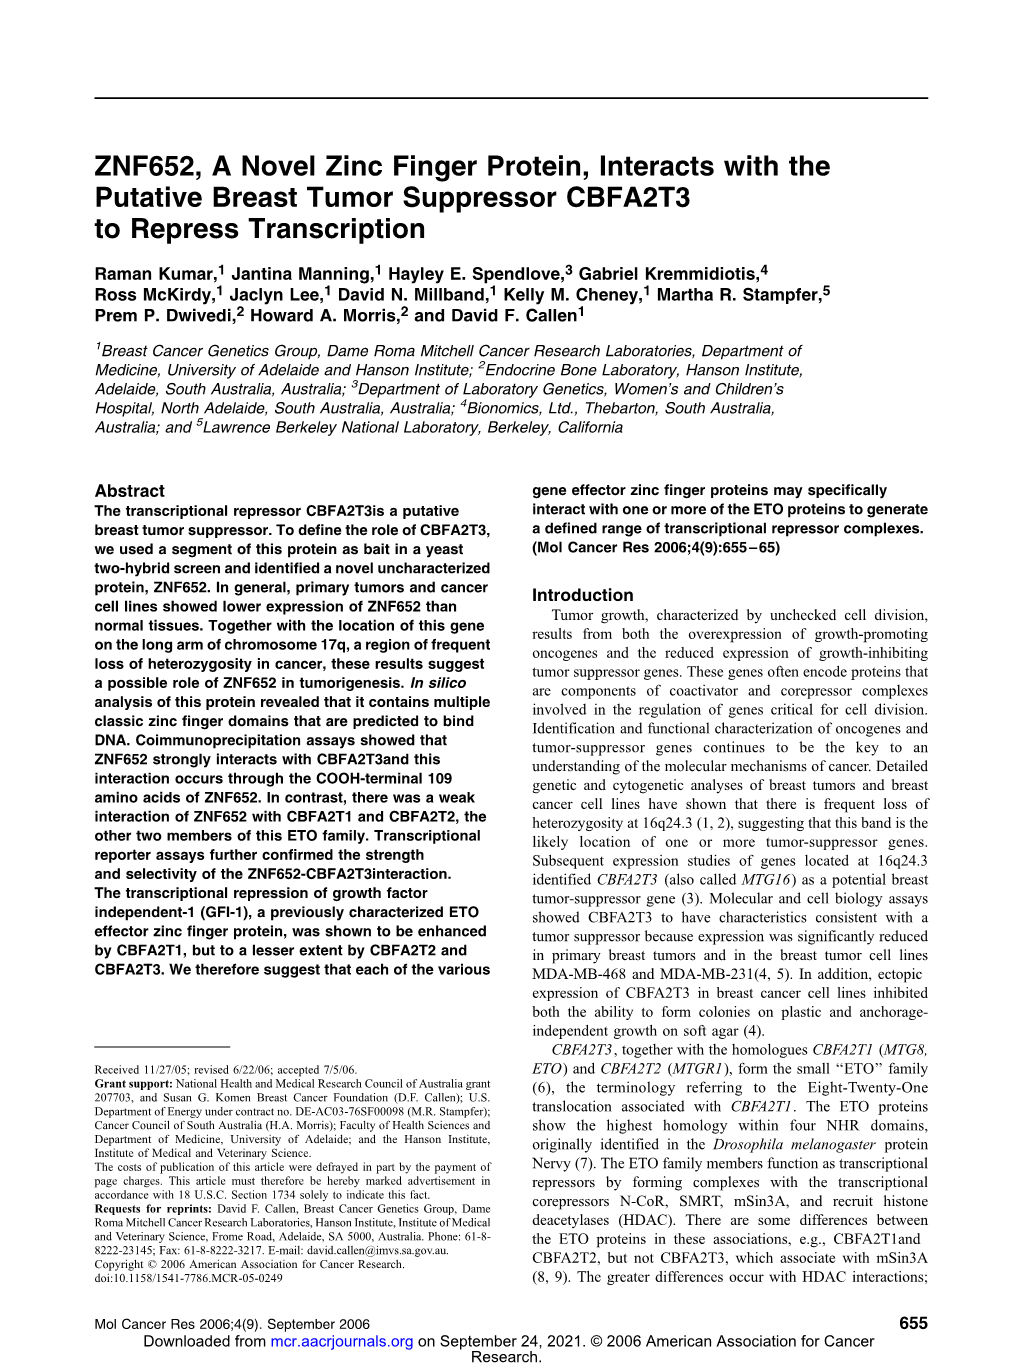 ZNF652, a Novel Zinc Finger Protein, Interacts with the Putative Breast Tumor Suppressor CBFA2T3 to Repress Transcription